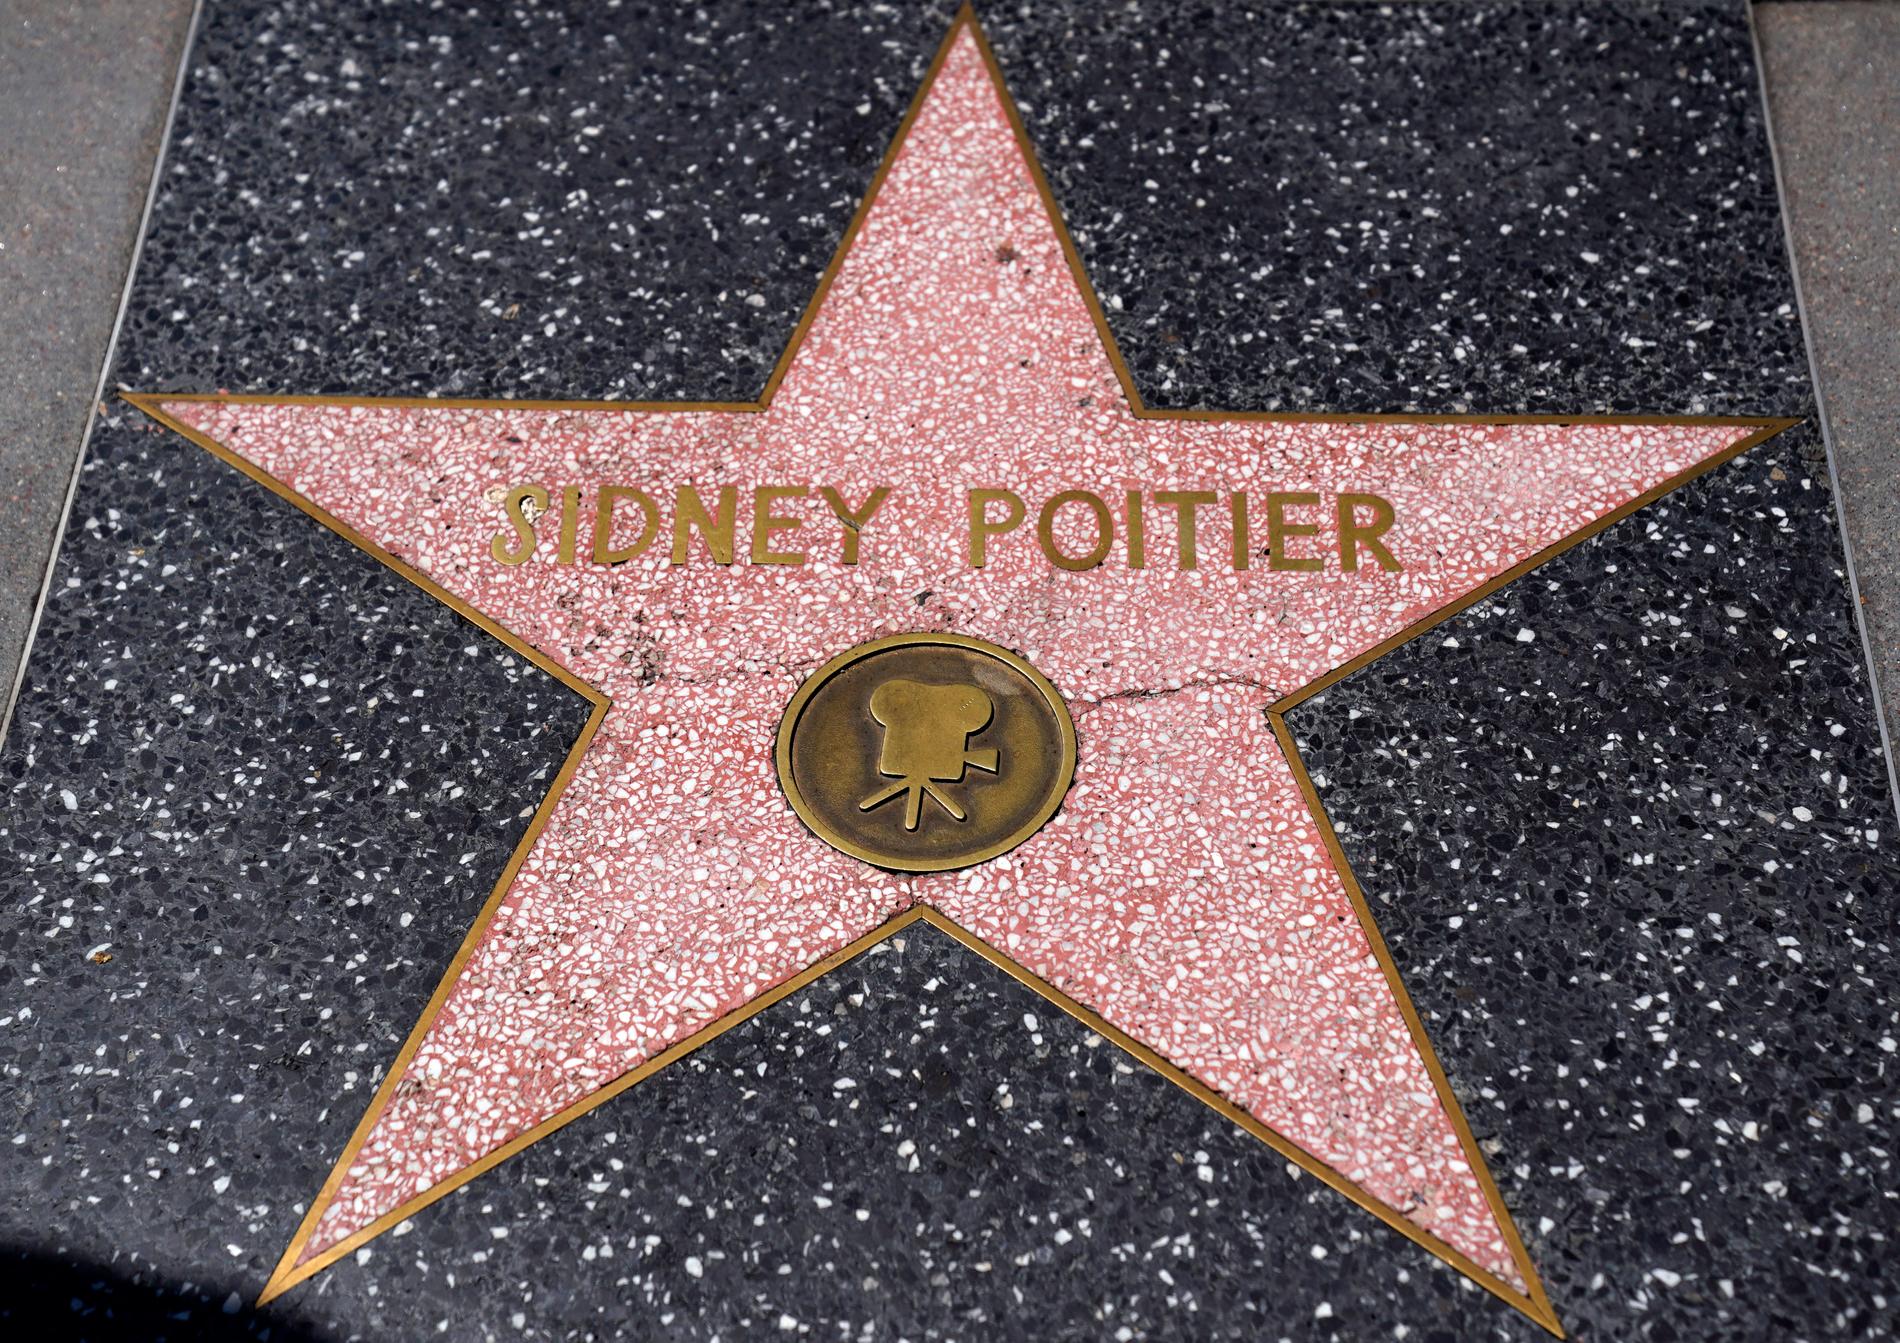 Sidney Poitiers stjärna på Hollywood walk of fame. 